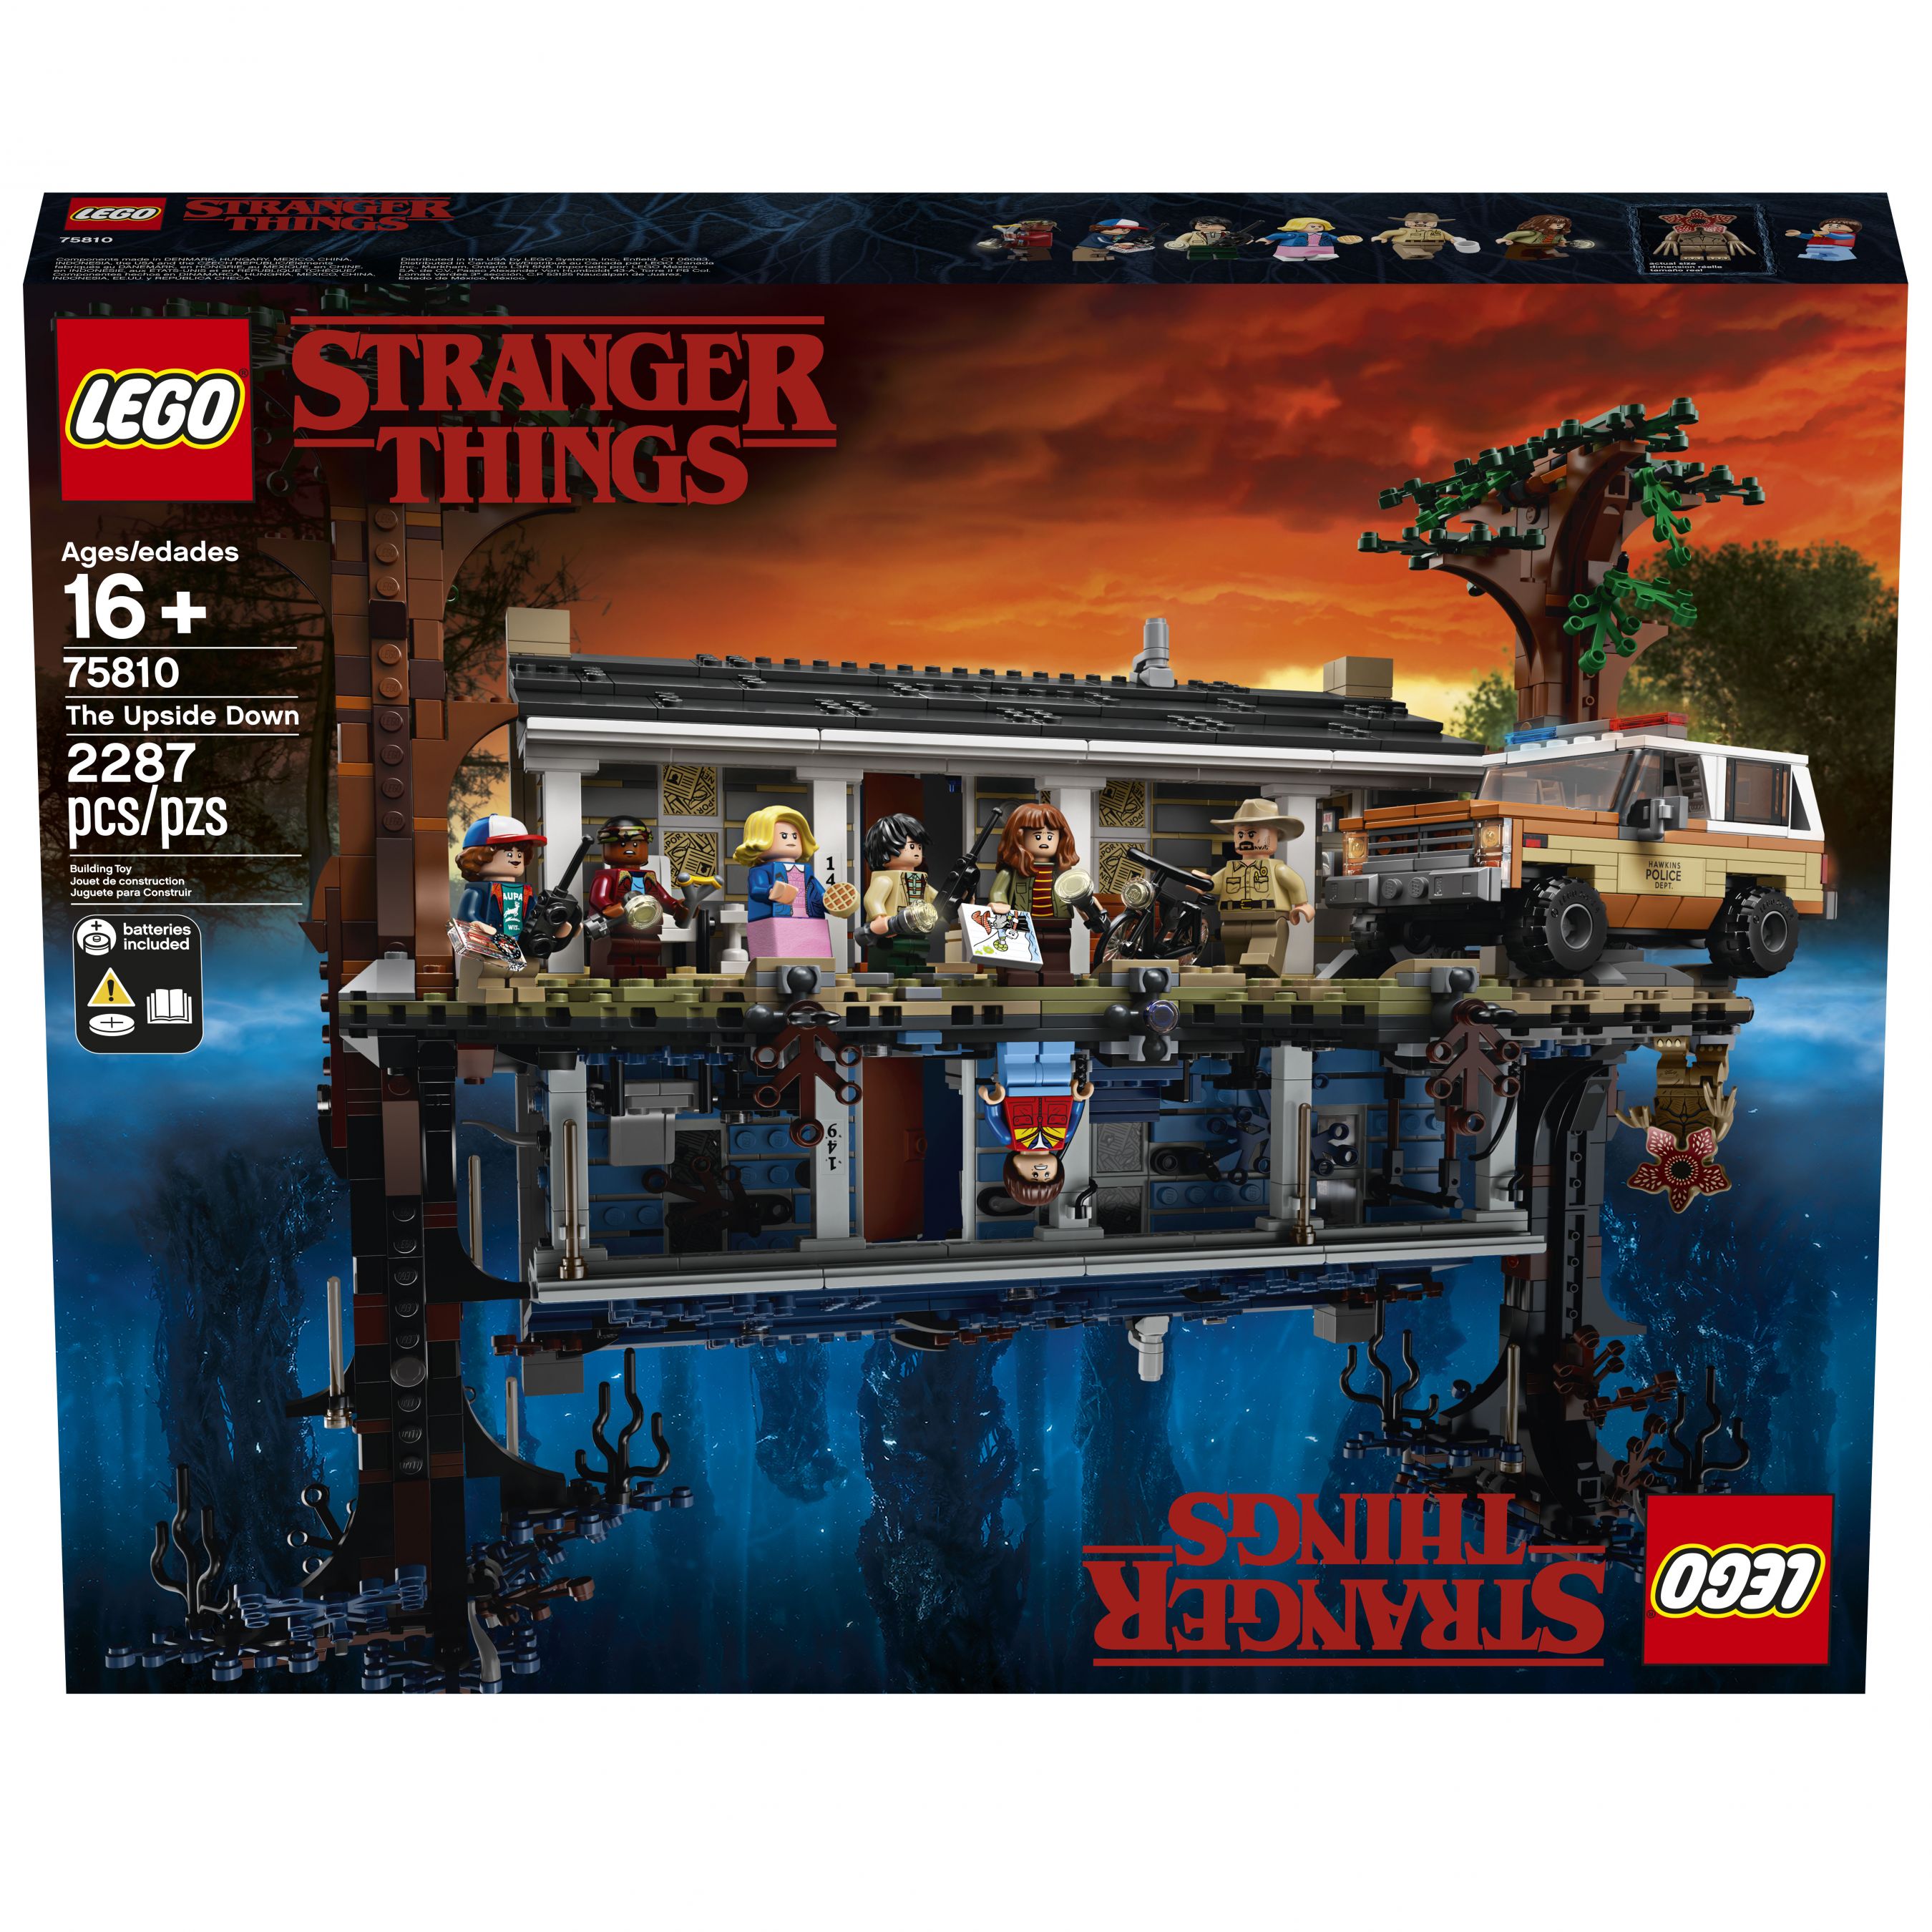 LEGO Stranger Things 75810 Die andere Seite LEGO_75810_box4_v39.jpg